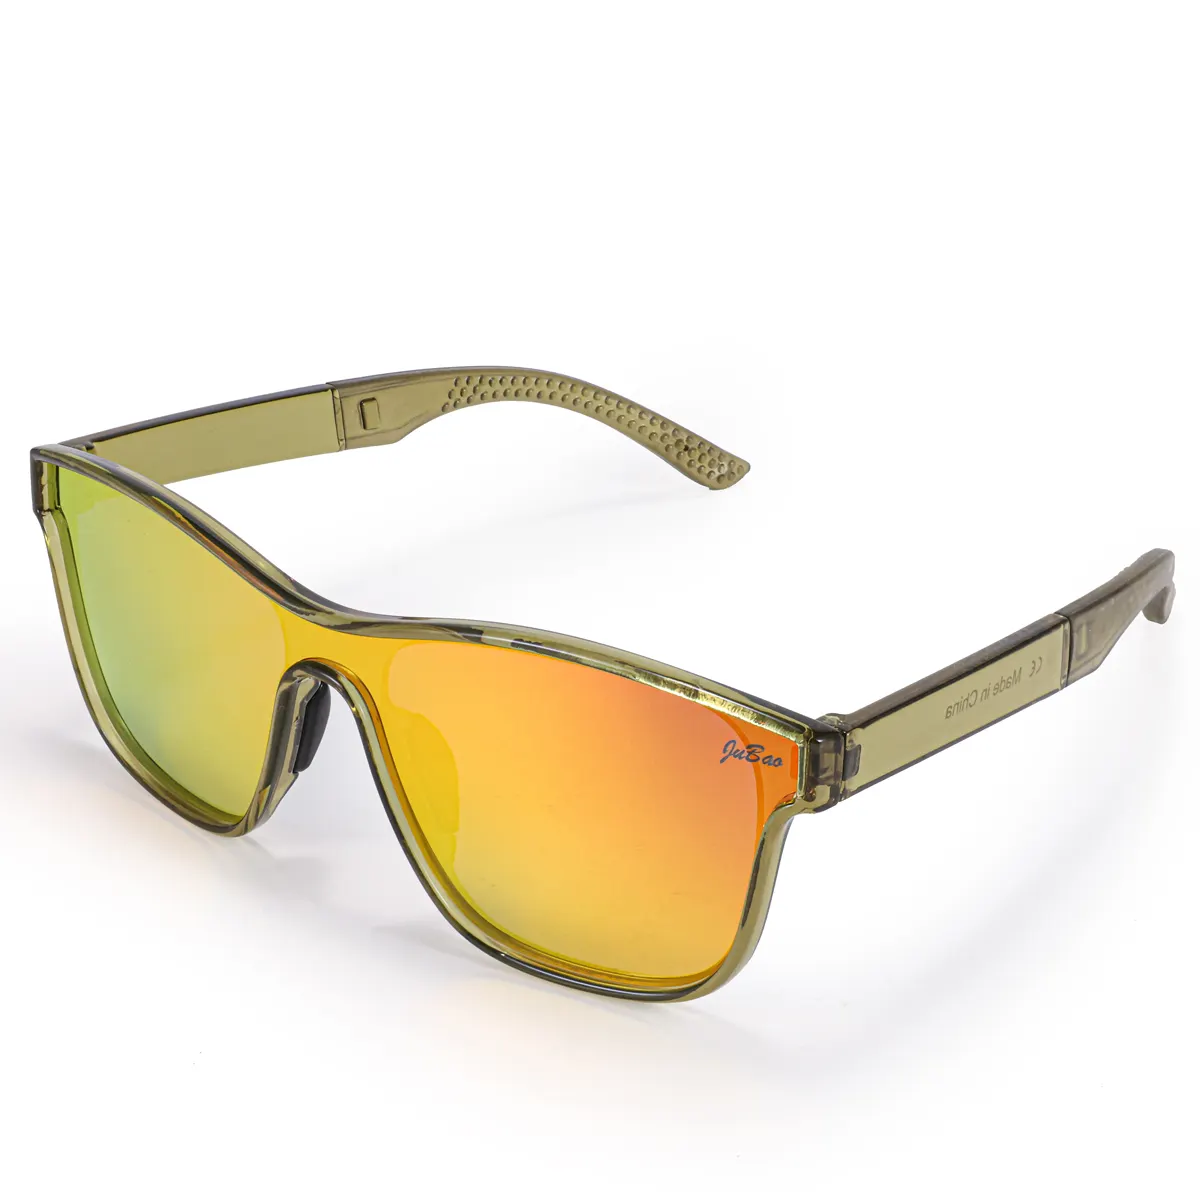 HUBO 508 gafas de sol deportivas polarizadas UV400 senderismo correr pesca conducción bicicleta de carretera gafas rockbros gafas de sol para hombres y mujeres